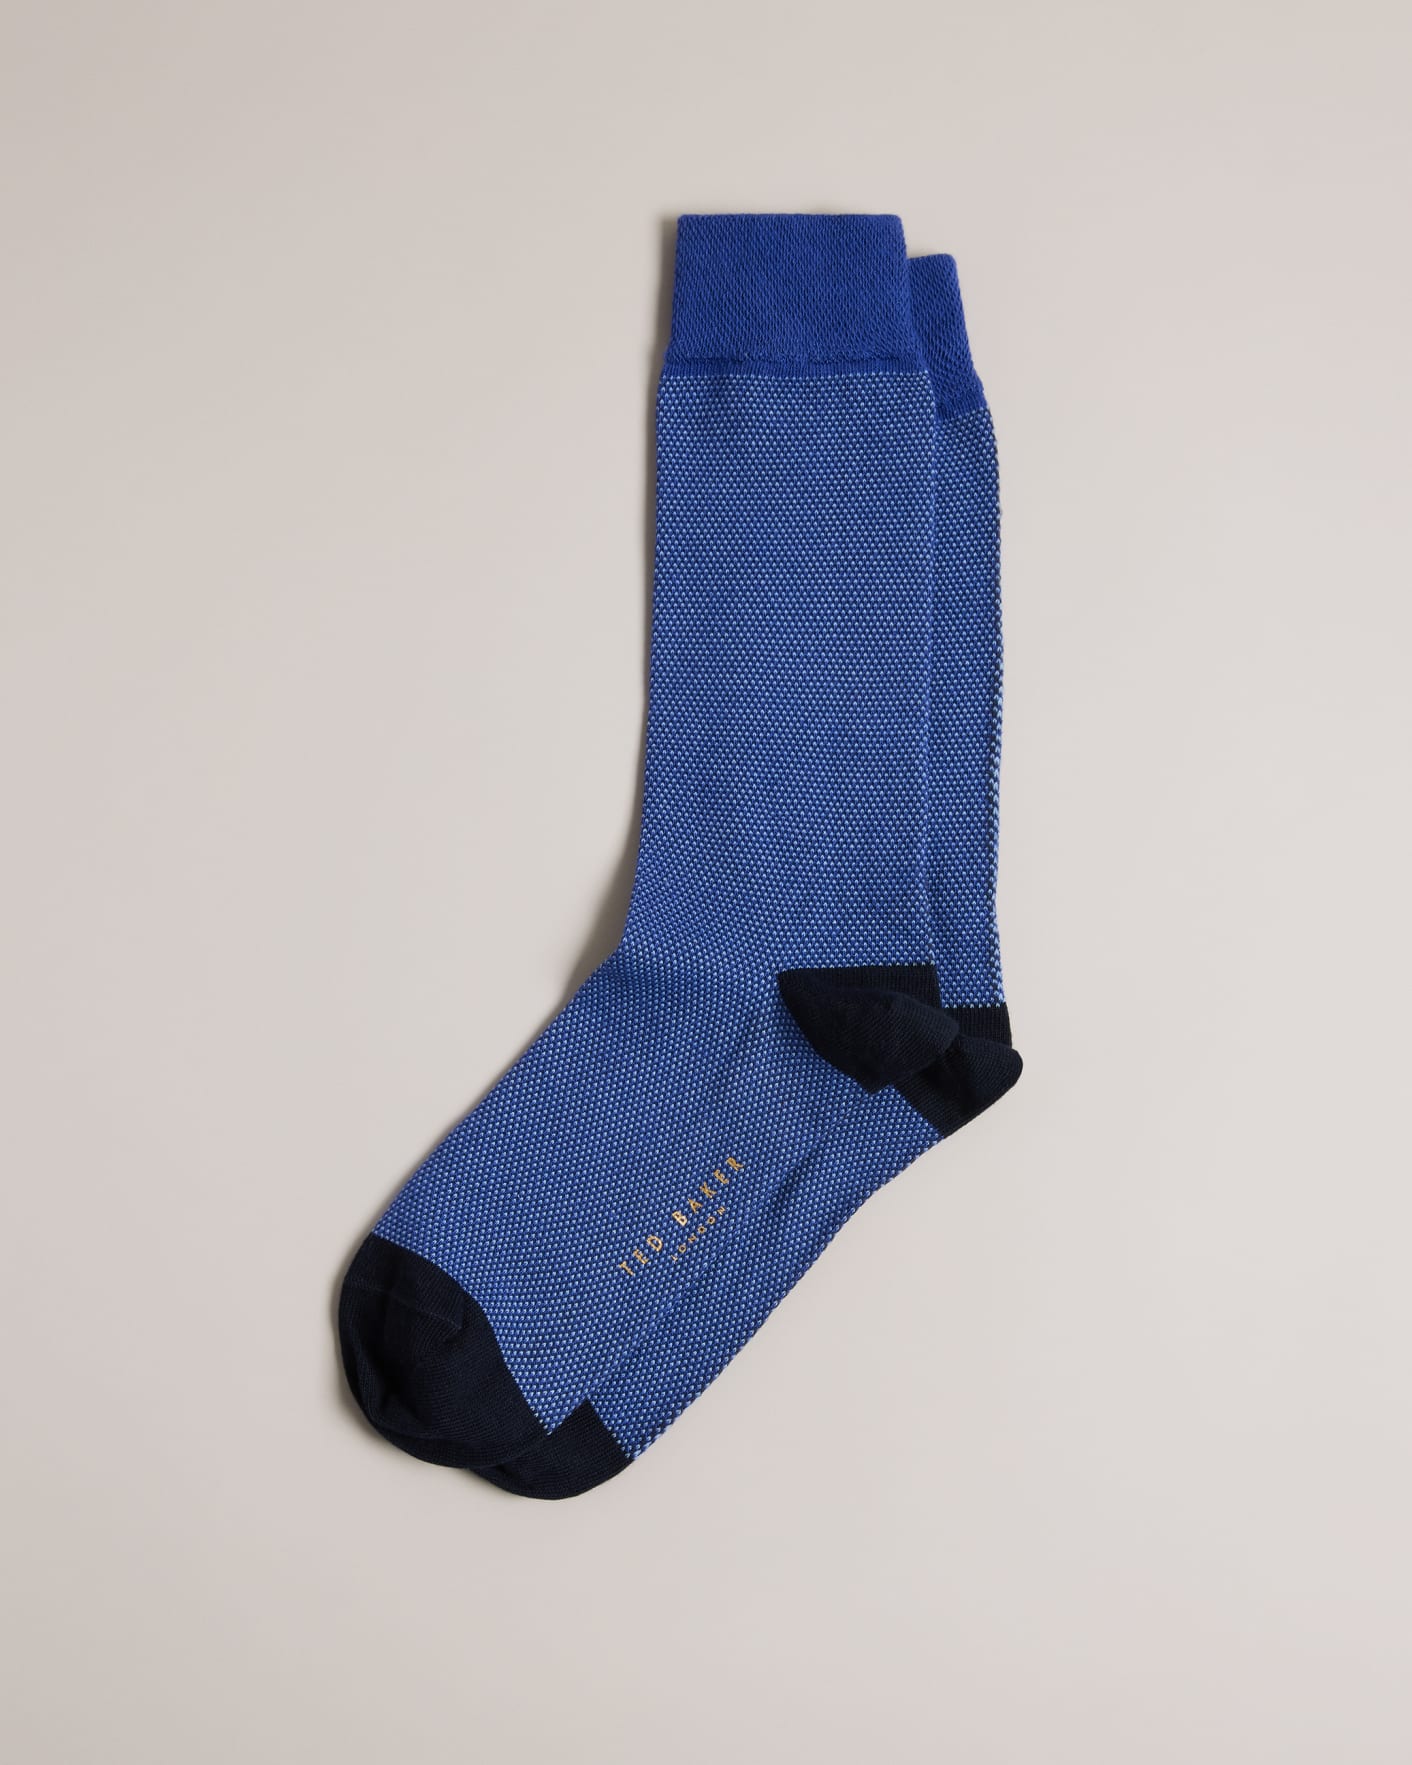 Ted Baker London All Over Spot Printed Blue Mens Socks MXSGILIAXH9M